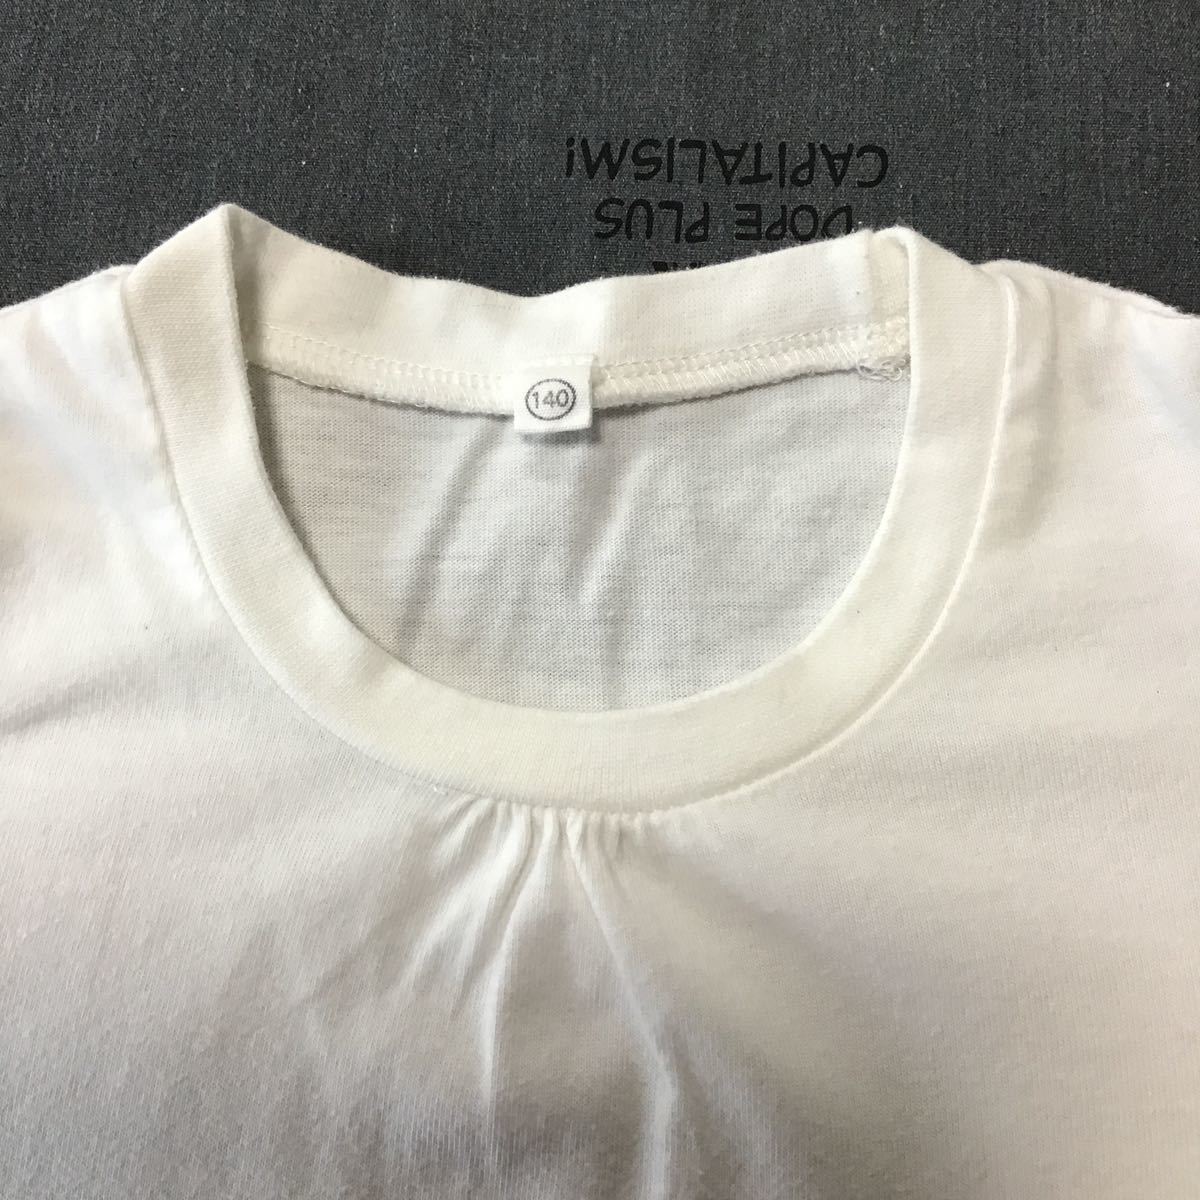 used 子供服「 西松屋 半袖Tシャツ 白色 140cm 」 綿60% / シンプルな半袖Tシャツなので、かわいいワンピースの下に合わせてください_画像2